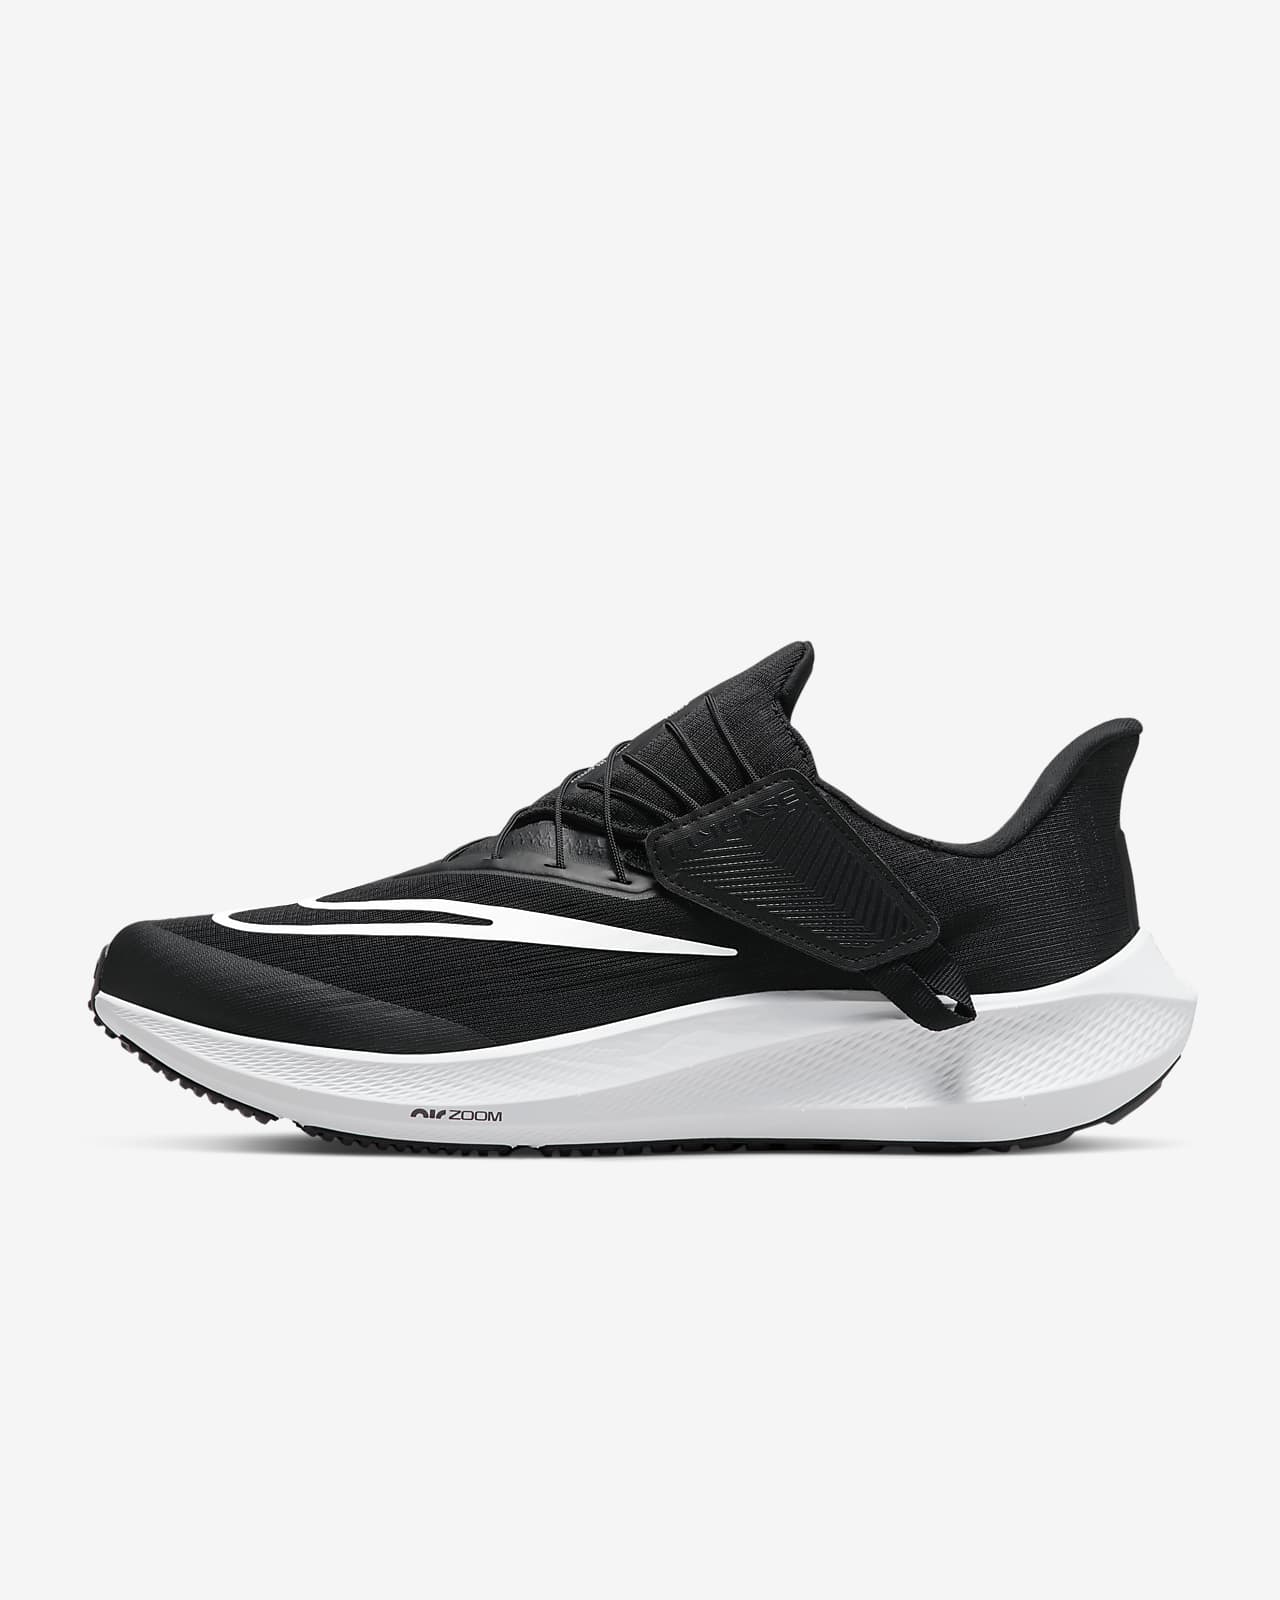 Ανδρικά παπούτσια για τρέξιμο σε δρόμο με εύκολη εφαρμογή/αφαίρεση Nike Pegasus FlyEase